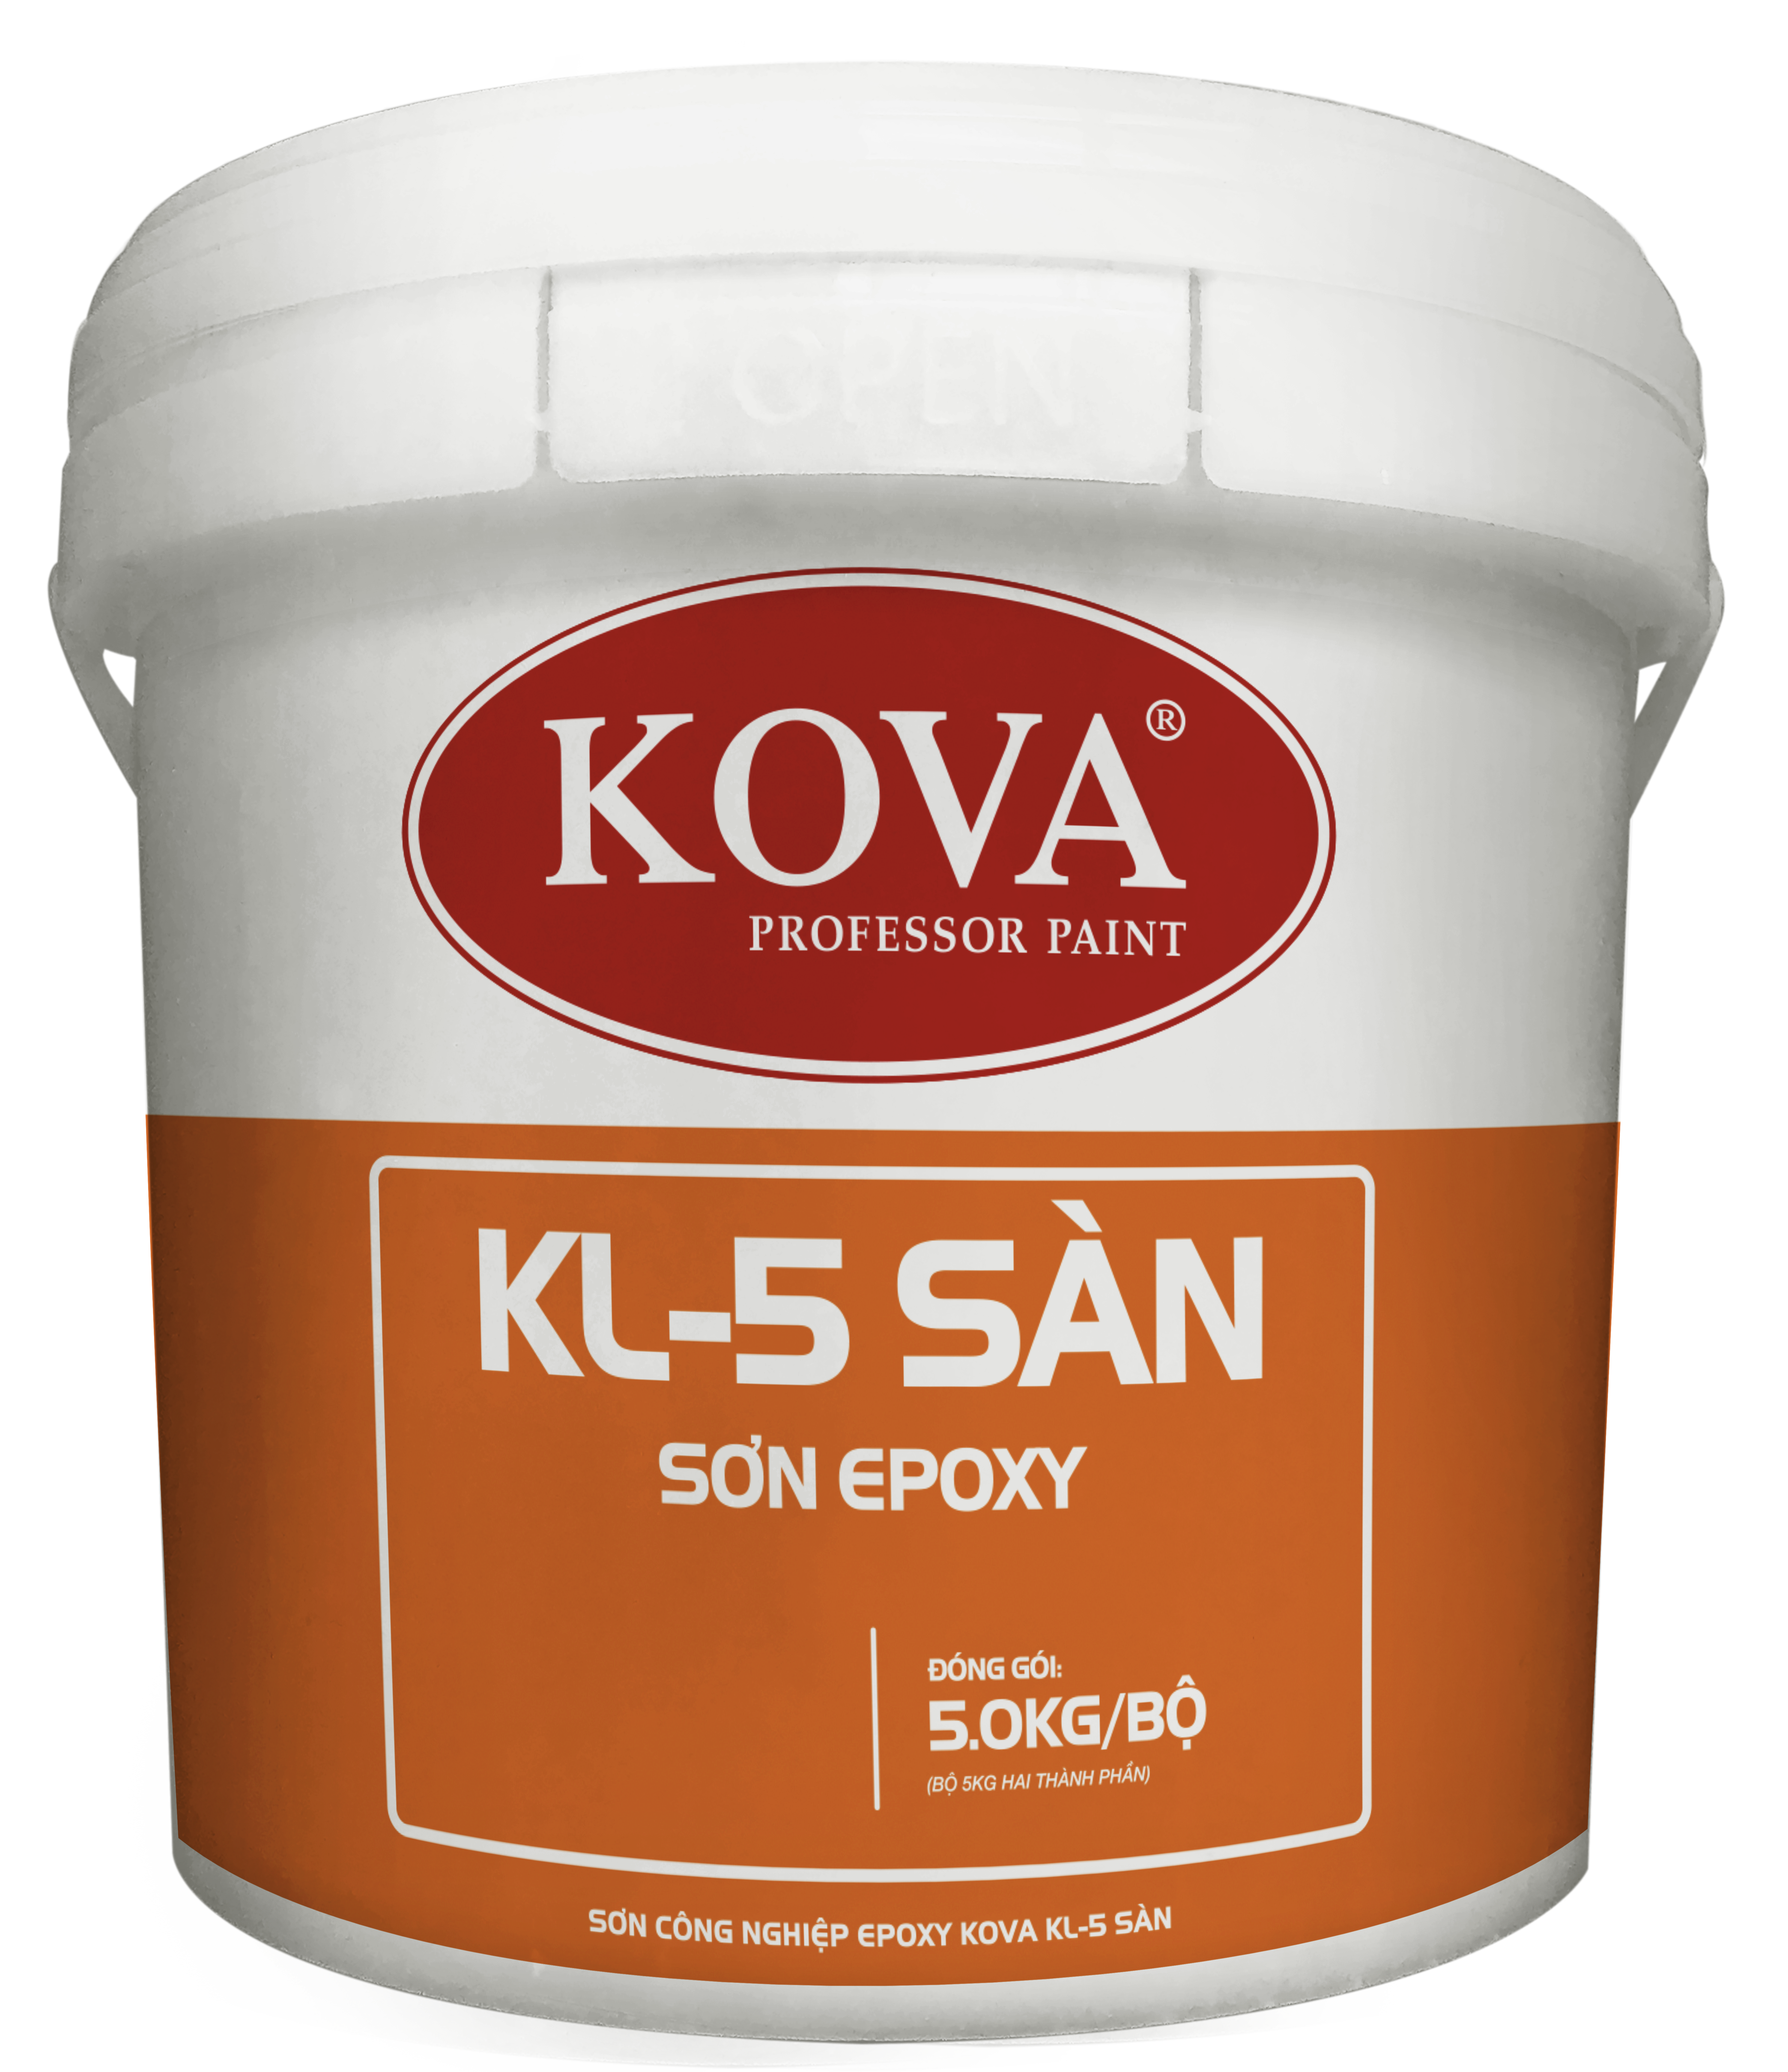 Sơn Công Nghiệp Epoxy KOVA KL-5 Sàn Kháng Khuẩn - Sơn epoxy KOVA KL-5 cho sàn là giải pháp hoàn hảo cho các không gian đòi hỏi kháng khuẩn như nhà ăn, phòng lab hay phòng gym. Sản phẩm chất lượng cao, đáp ứng đầy đủ các tiêu chuẩn an toàn và bền bỉ.